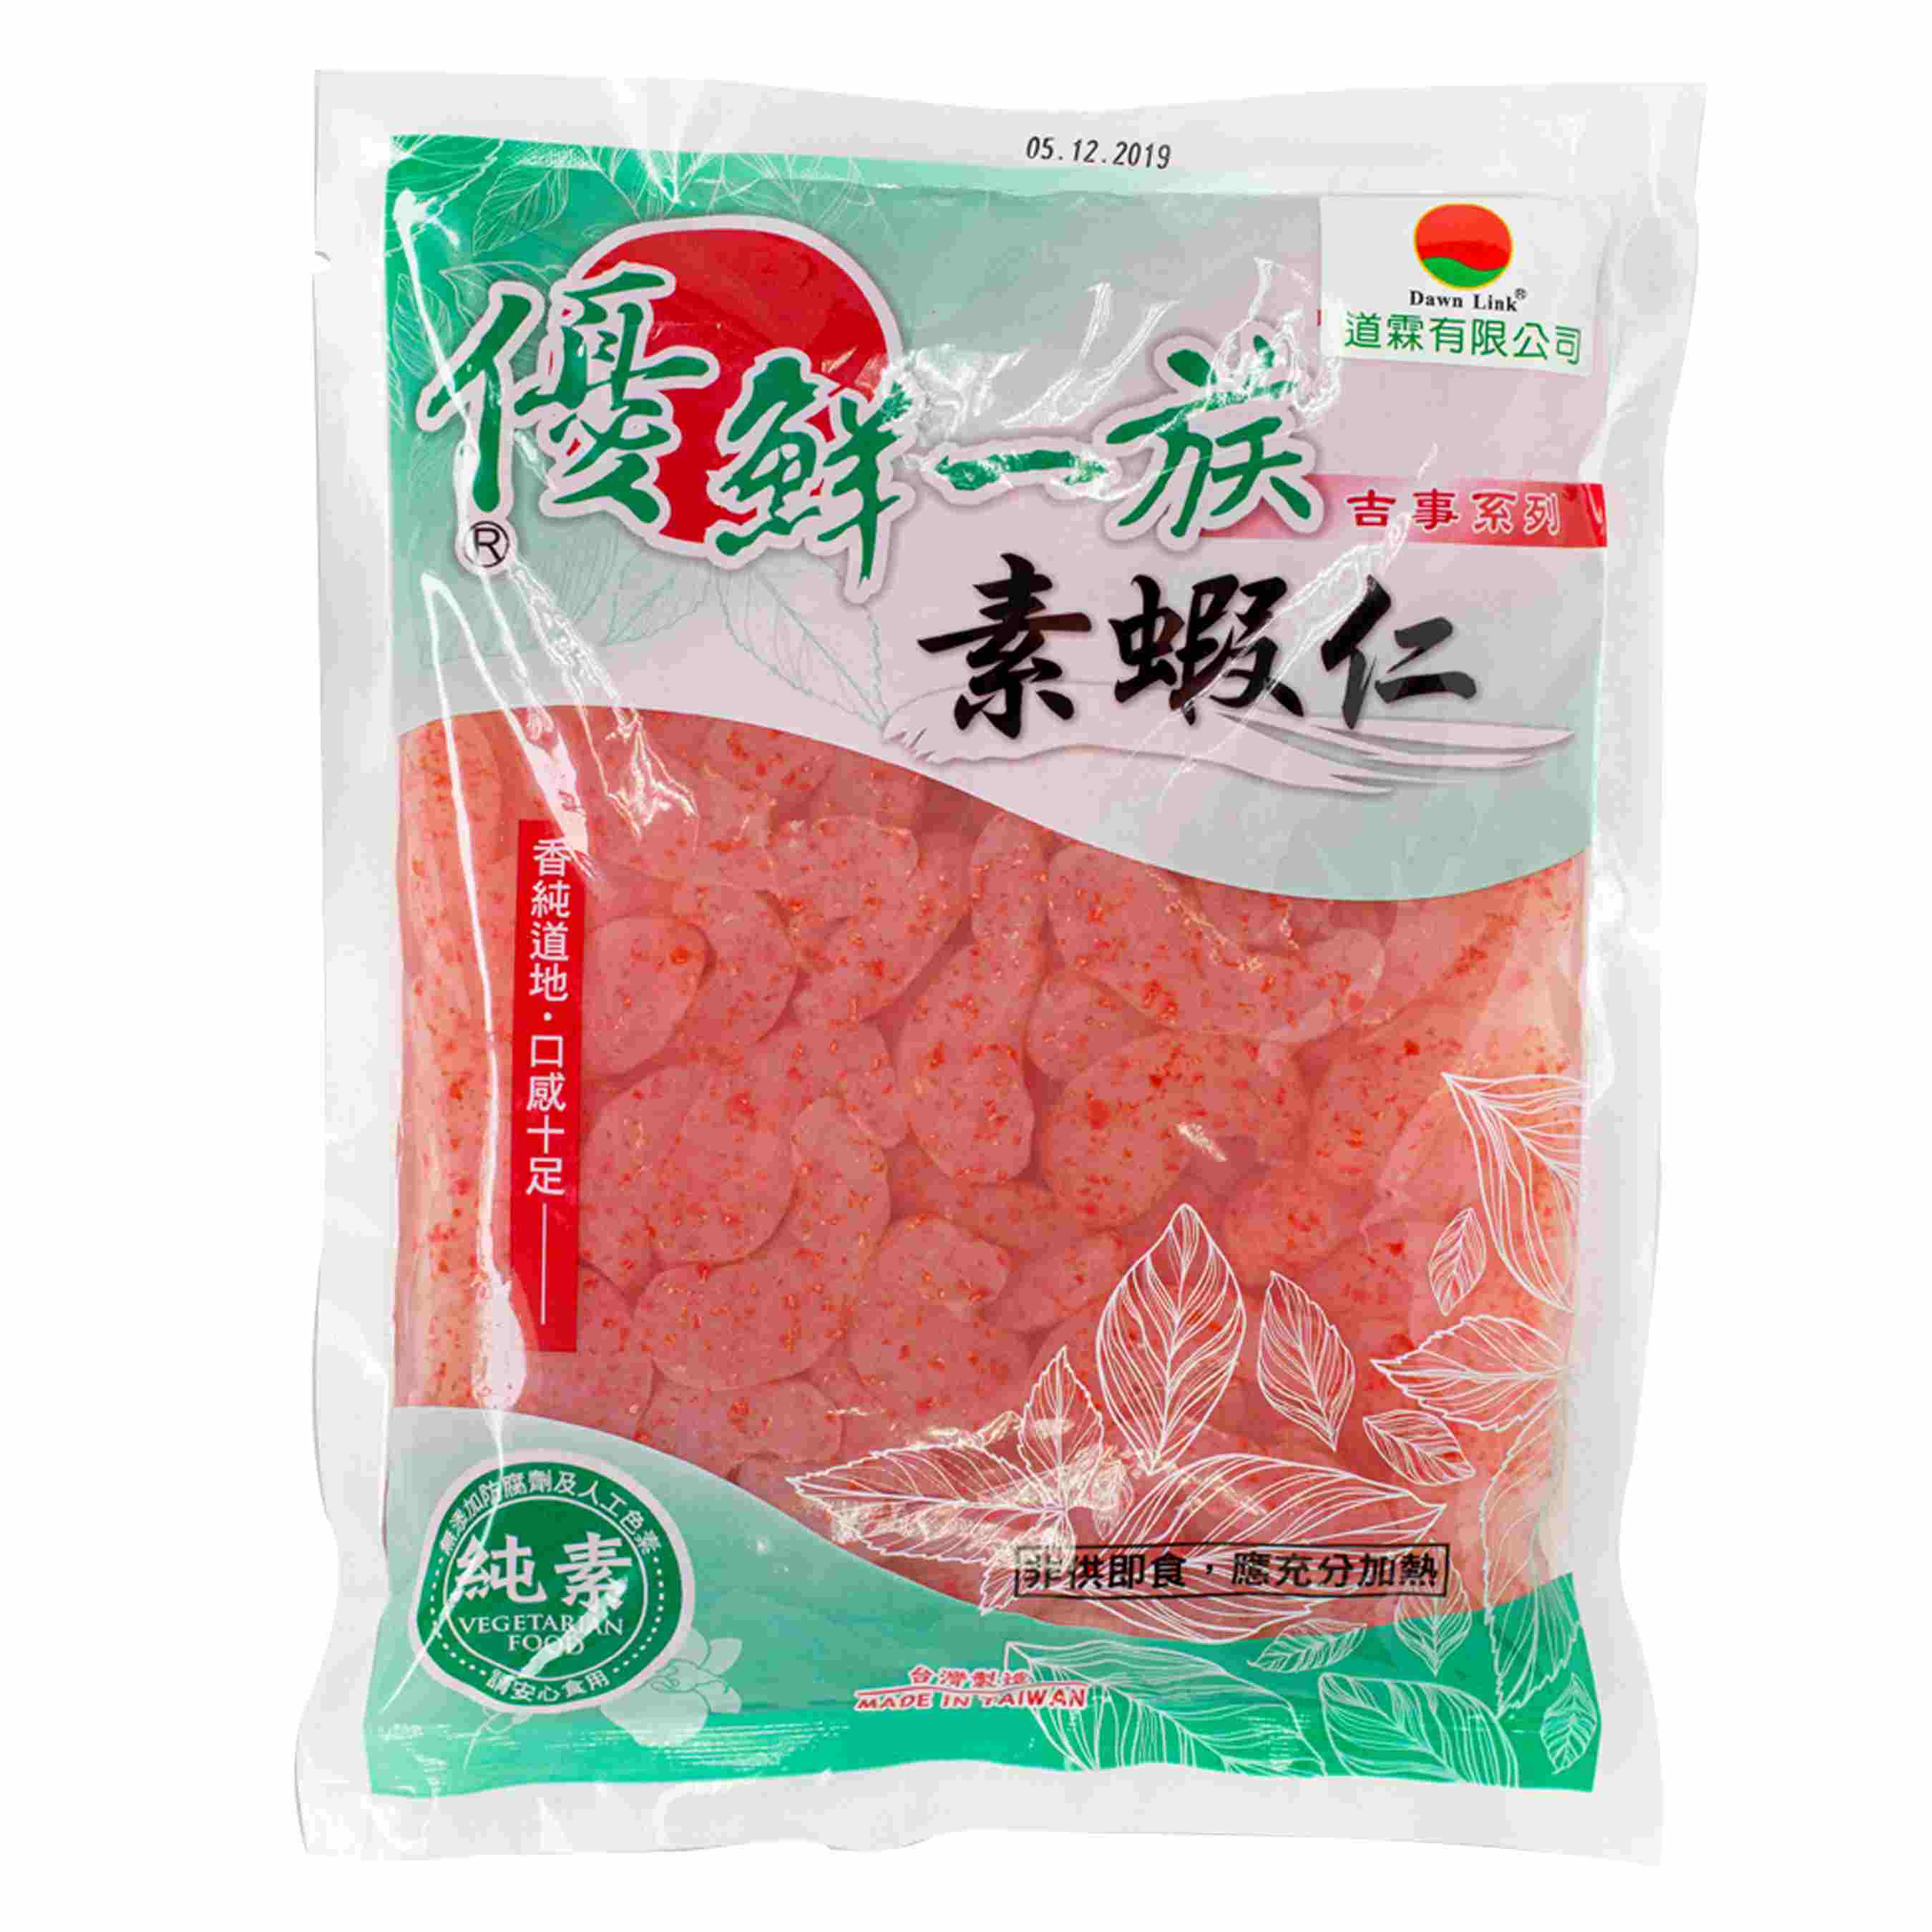 Image Vegetarian Shrimp 600grams 一麟 - 优鲜一族虾仁 600grams